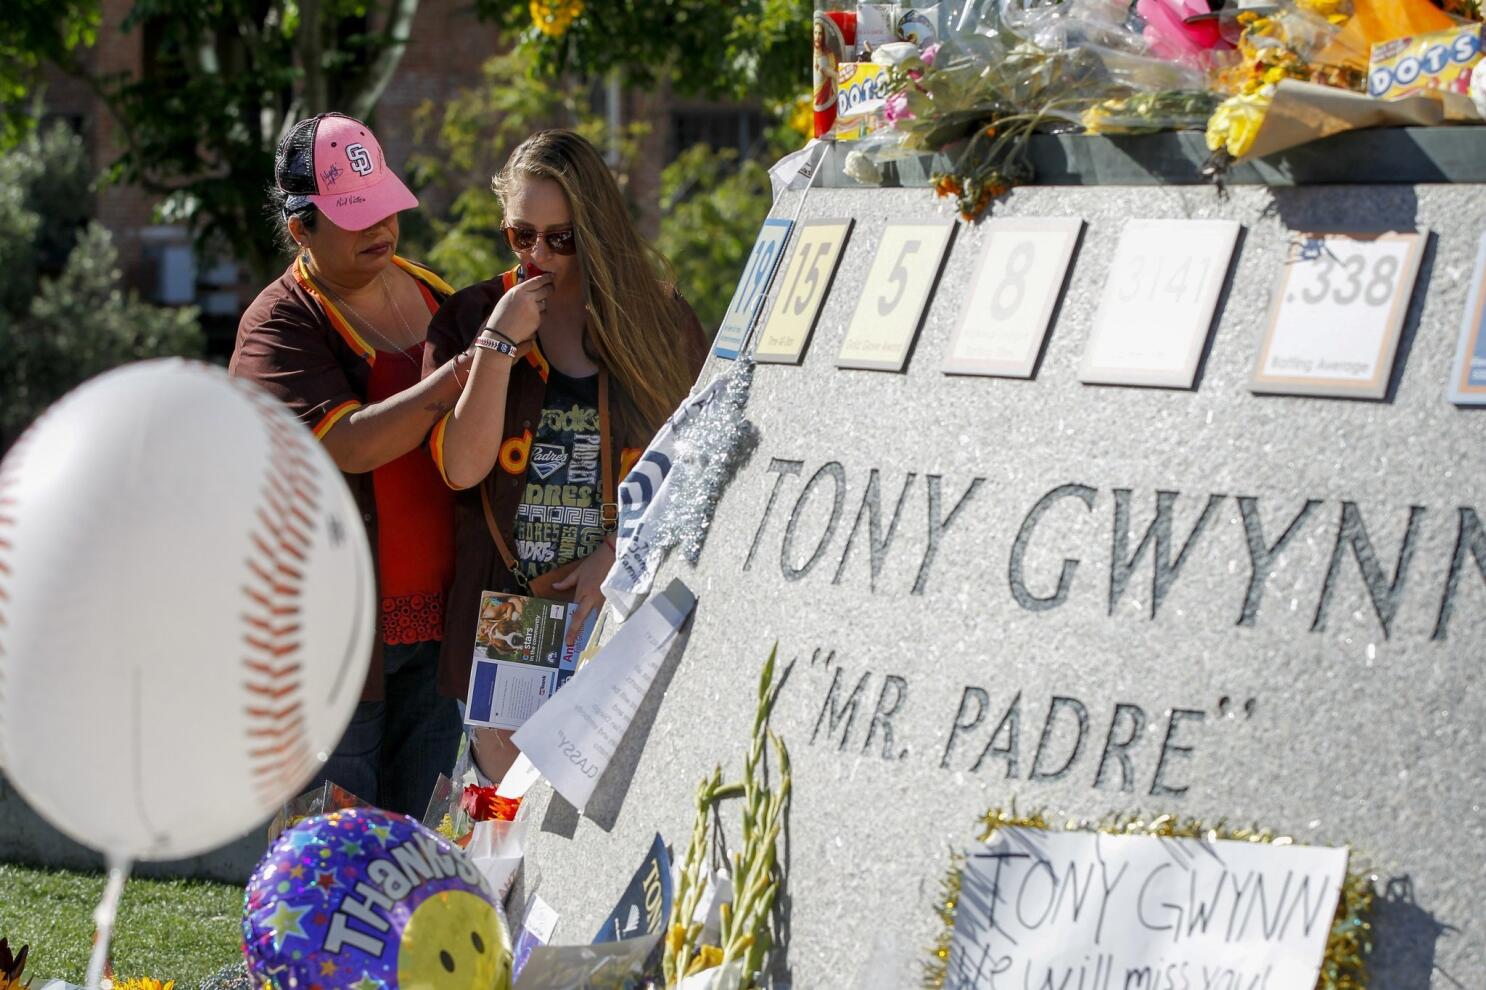 Tony Gwynn Statue Dedication - The San Diego Union-Tribune